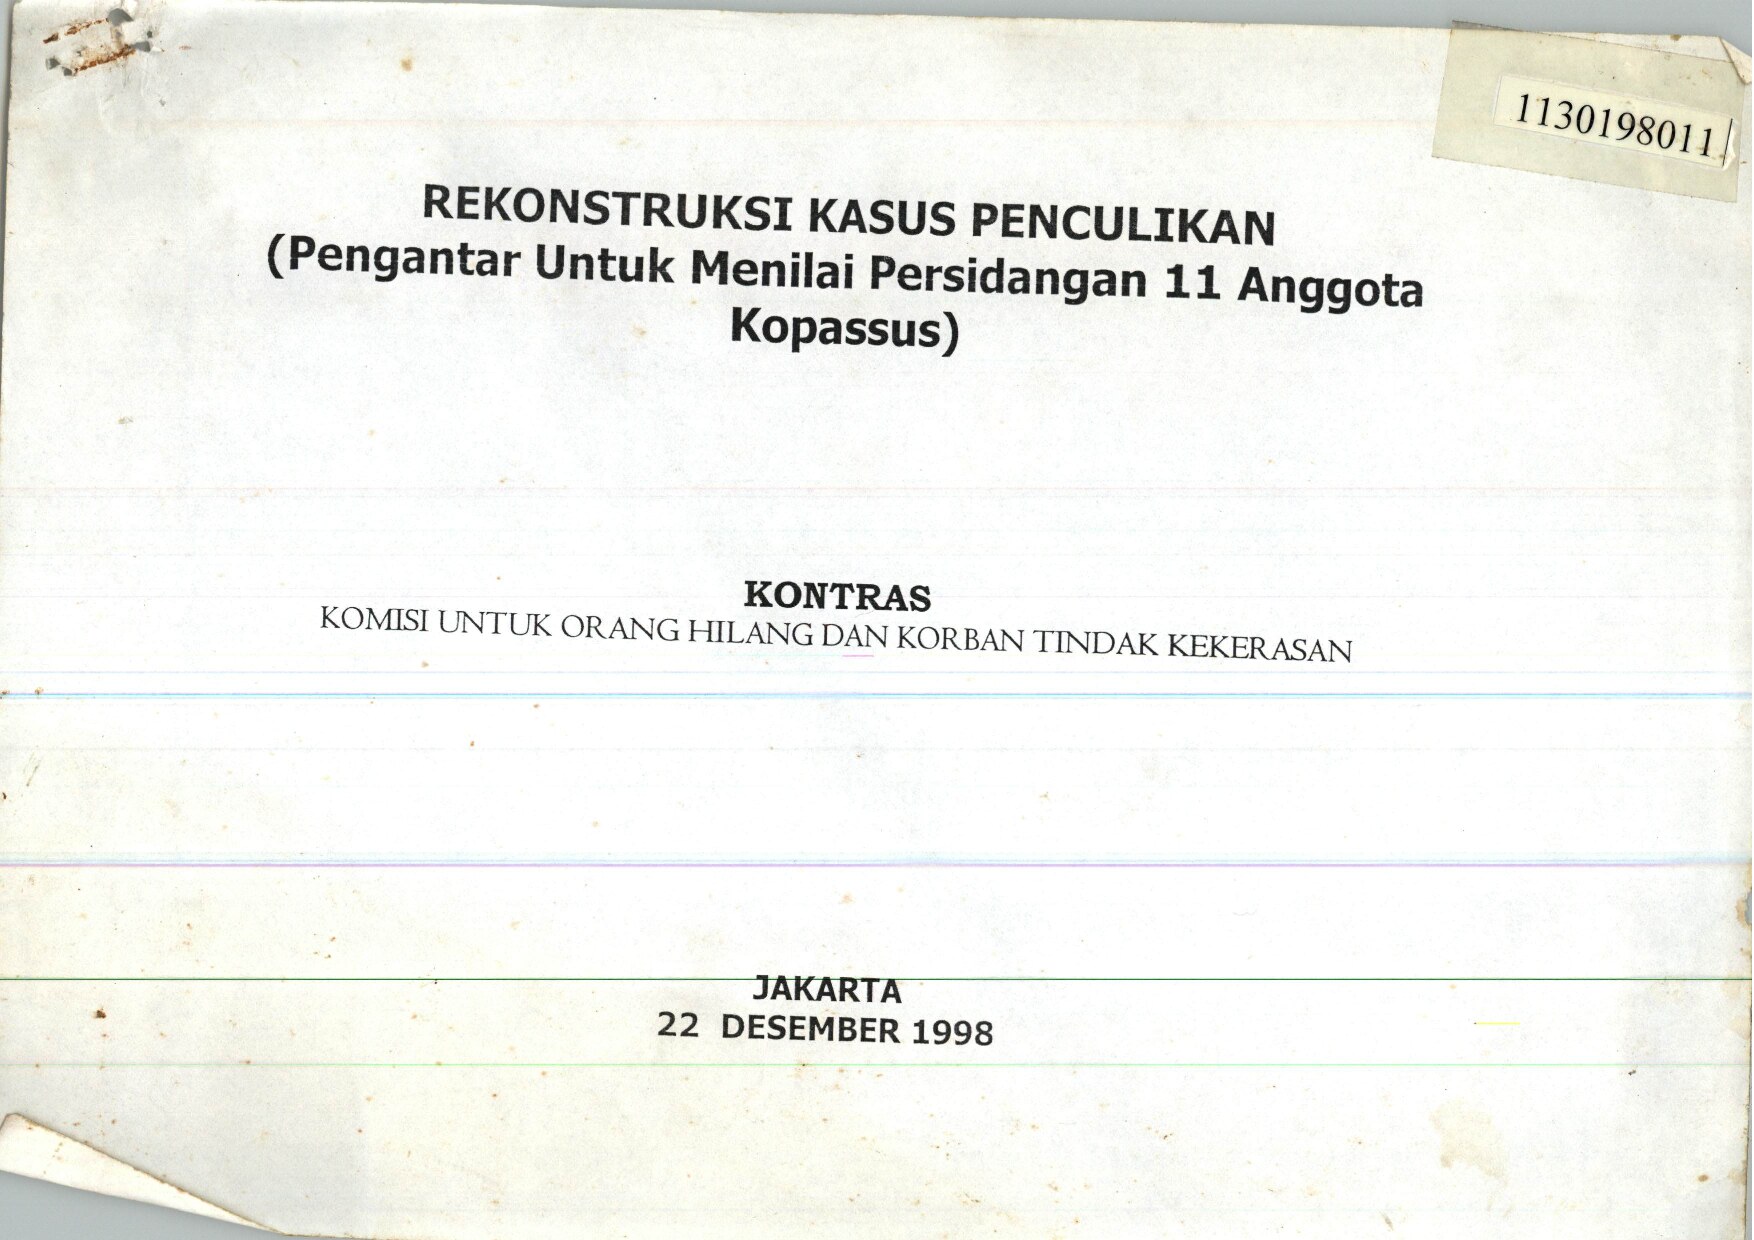 735-Laporan-Rekonstruksi-Kasus-Penculikan-Pengantar-untuk-Menilai-Persidangan-11-Anggota-Kopassus-disusun-oleh-Komisi-untuk-Orang-Hilang-dan-Korban-Tindak-Kekerasan-Jakarta-22-Desember-1998